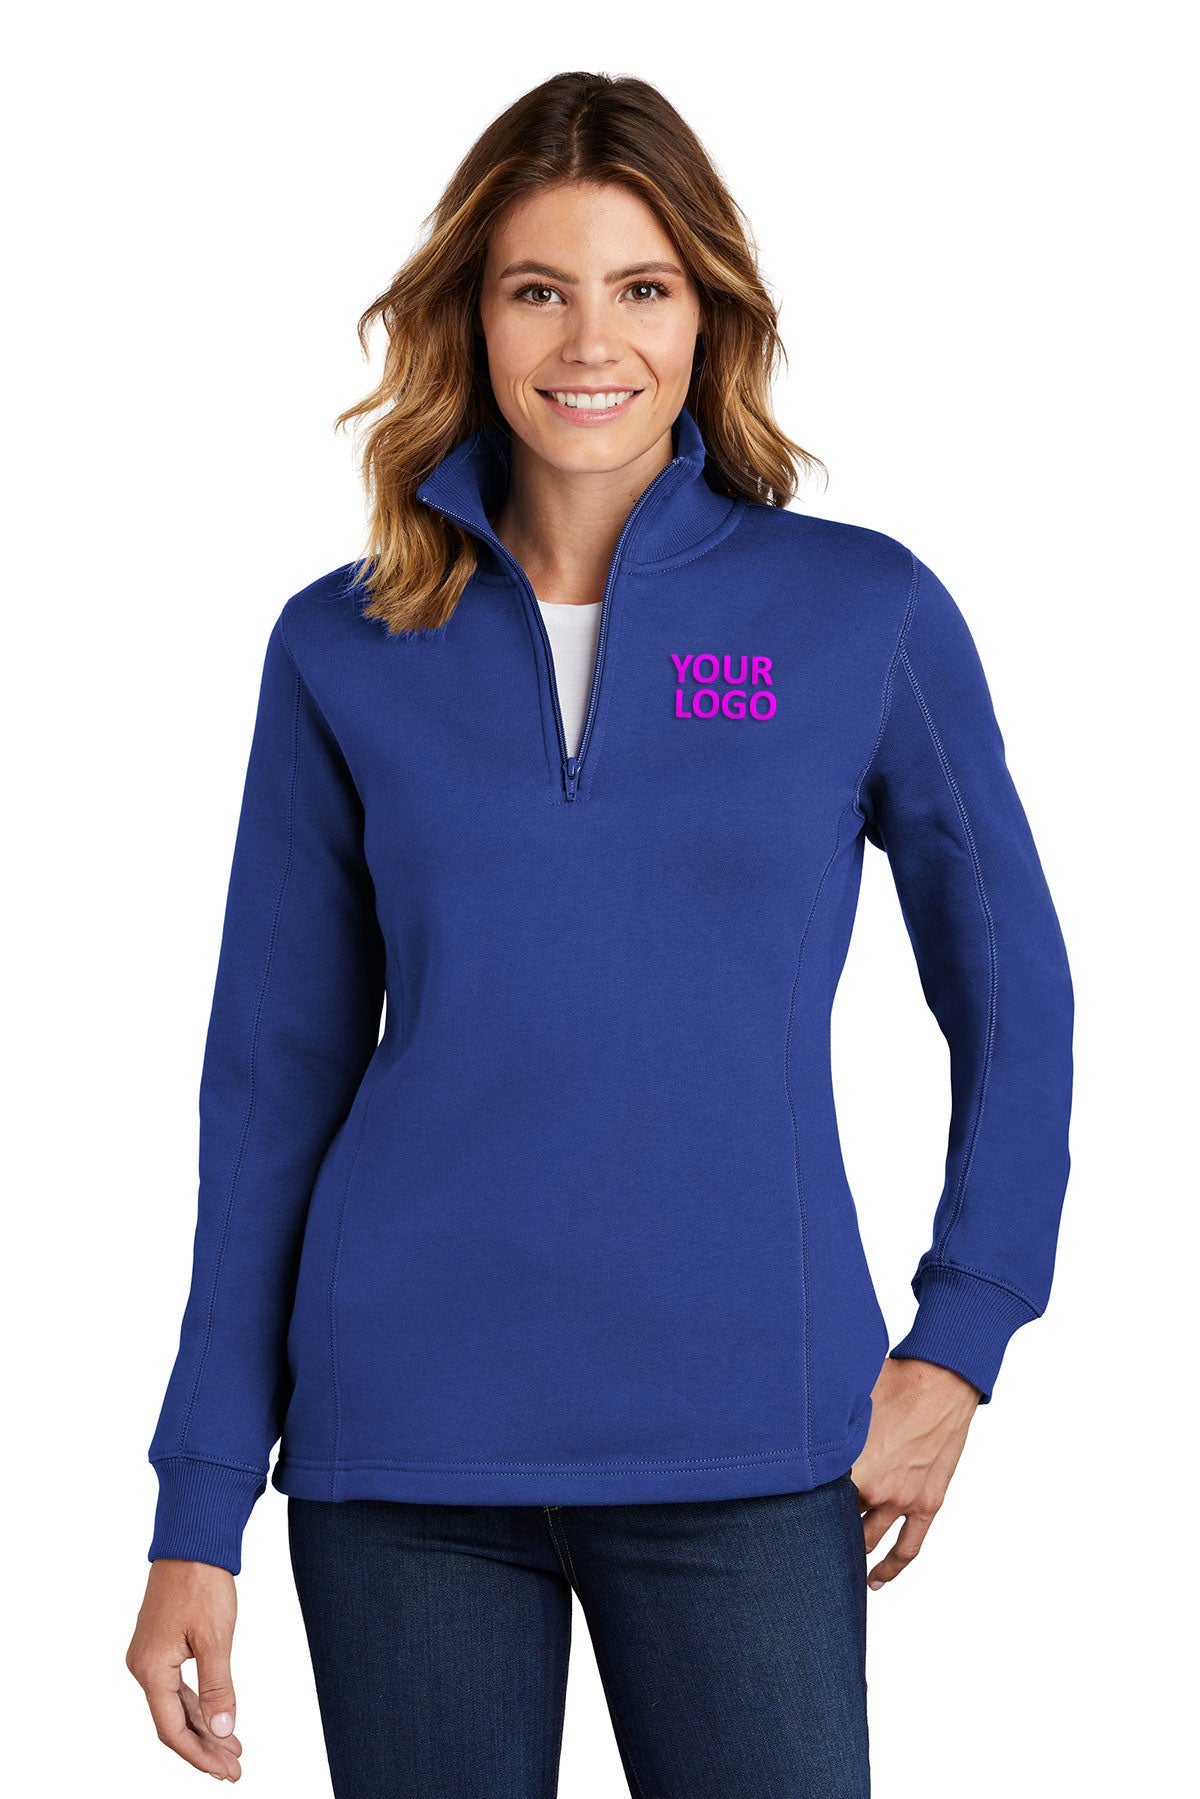 Sport-Tek Ladies Branded 1/4-Zip Sweatshirts, True Royal